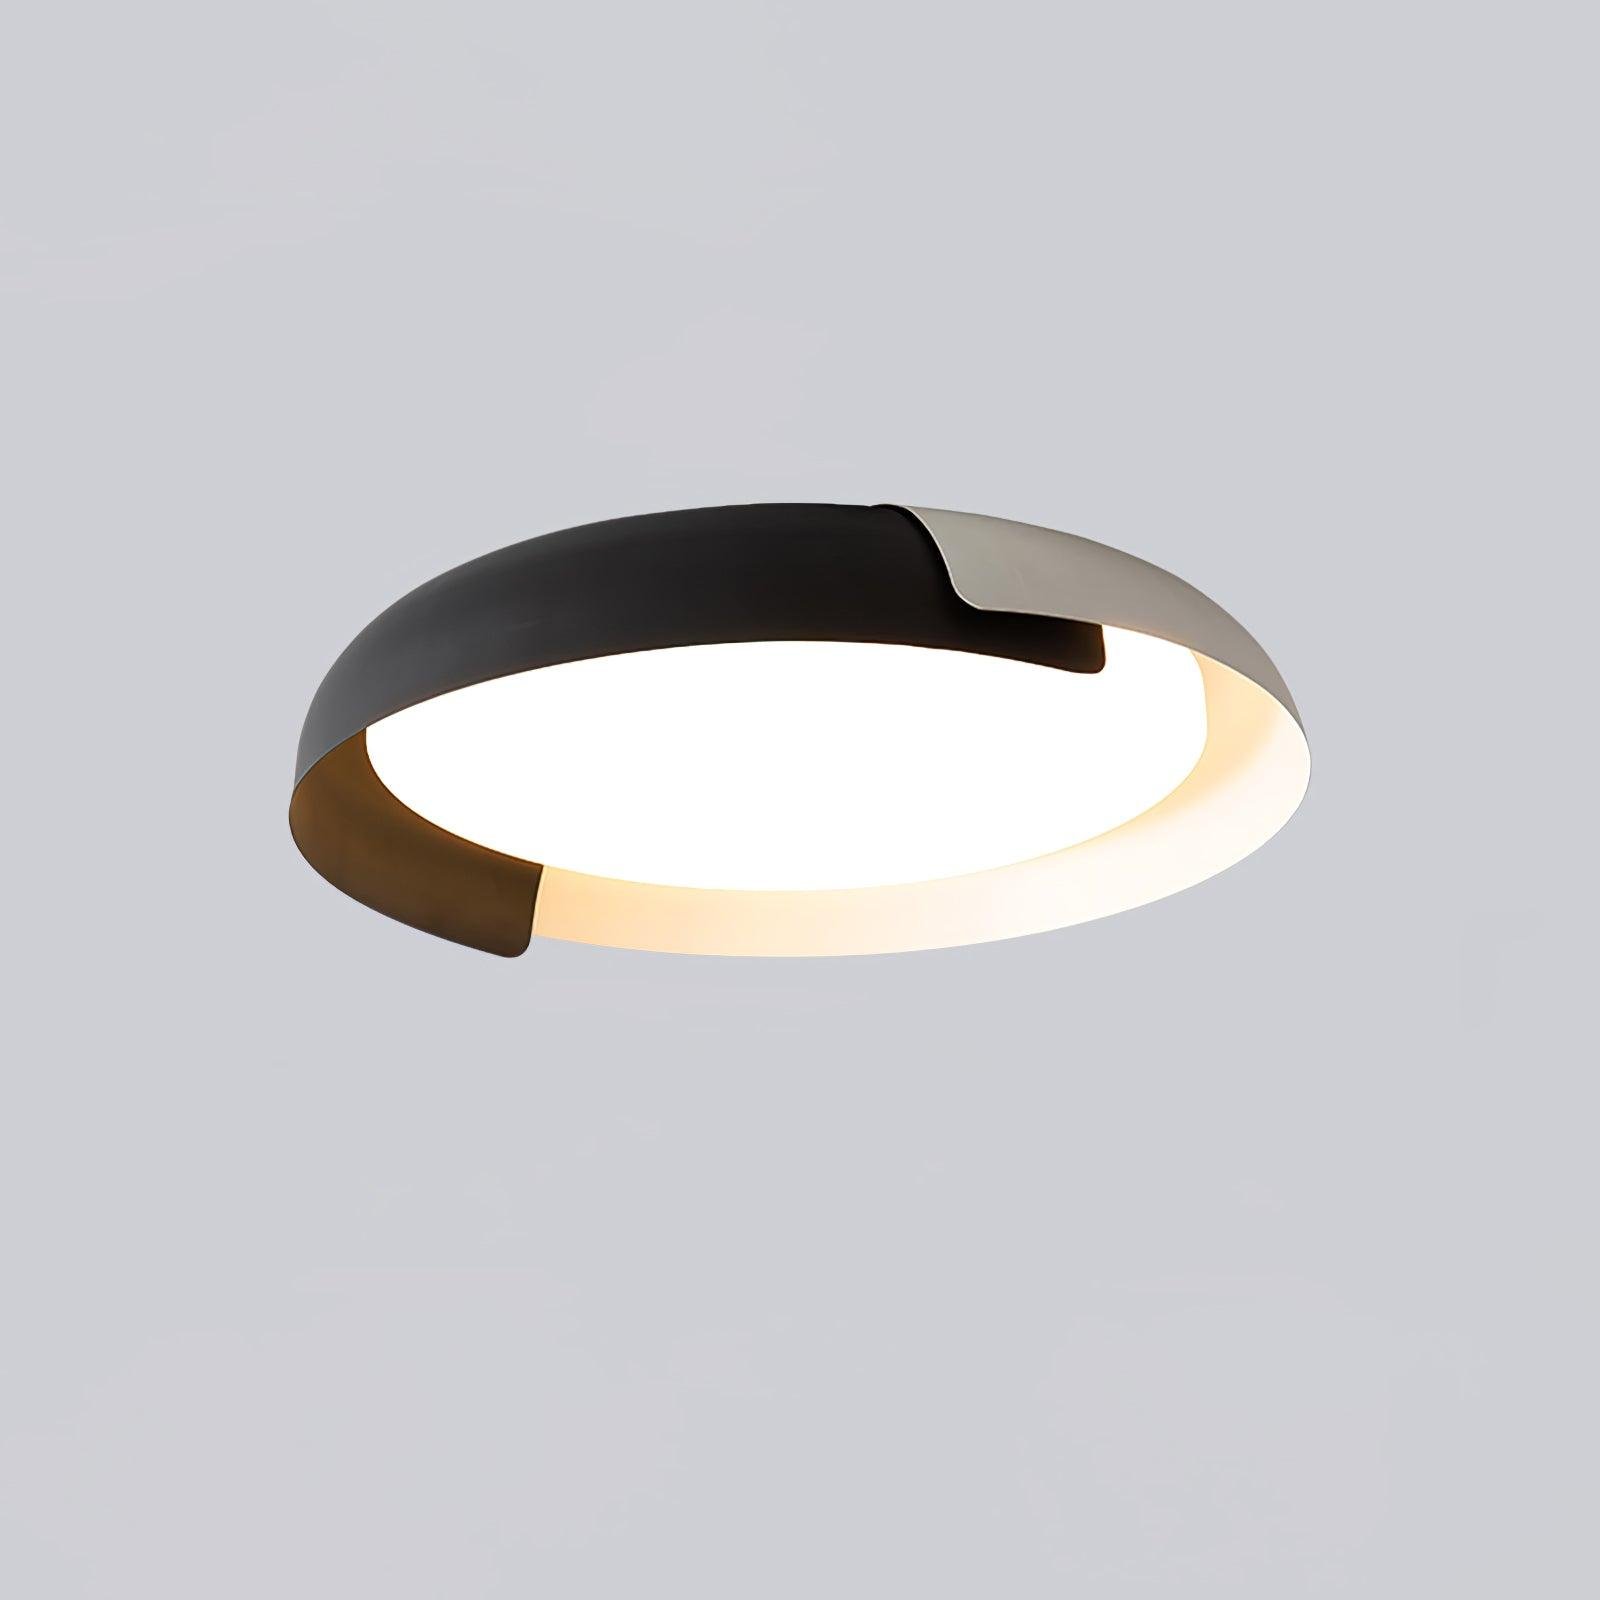 Vikaey Ceiling Light in White or Black, Diameter 18.1″ x Height 3.9″ (46cm x 10cm), Emitting Cool Light